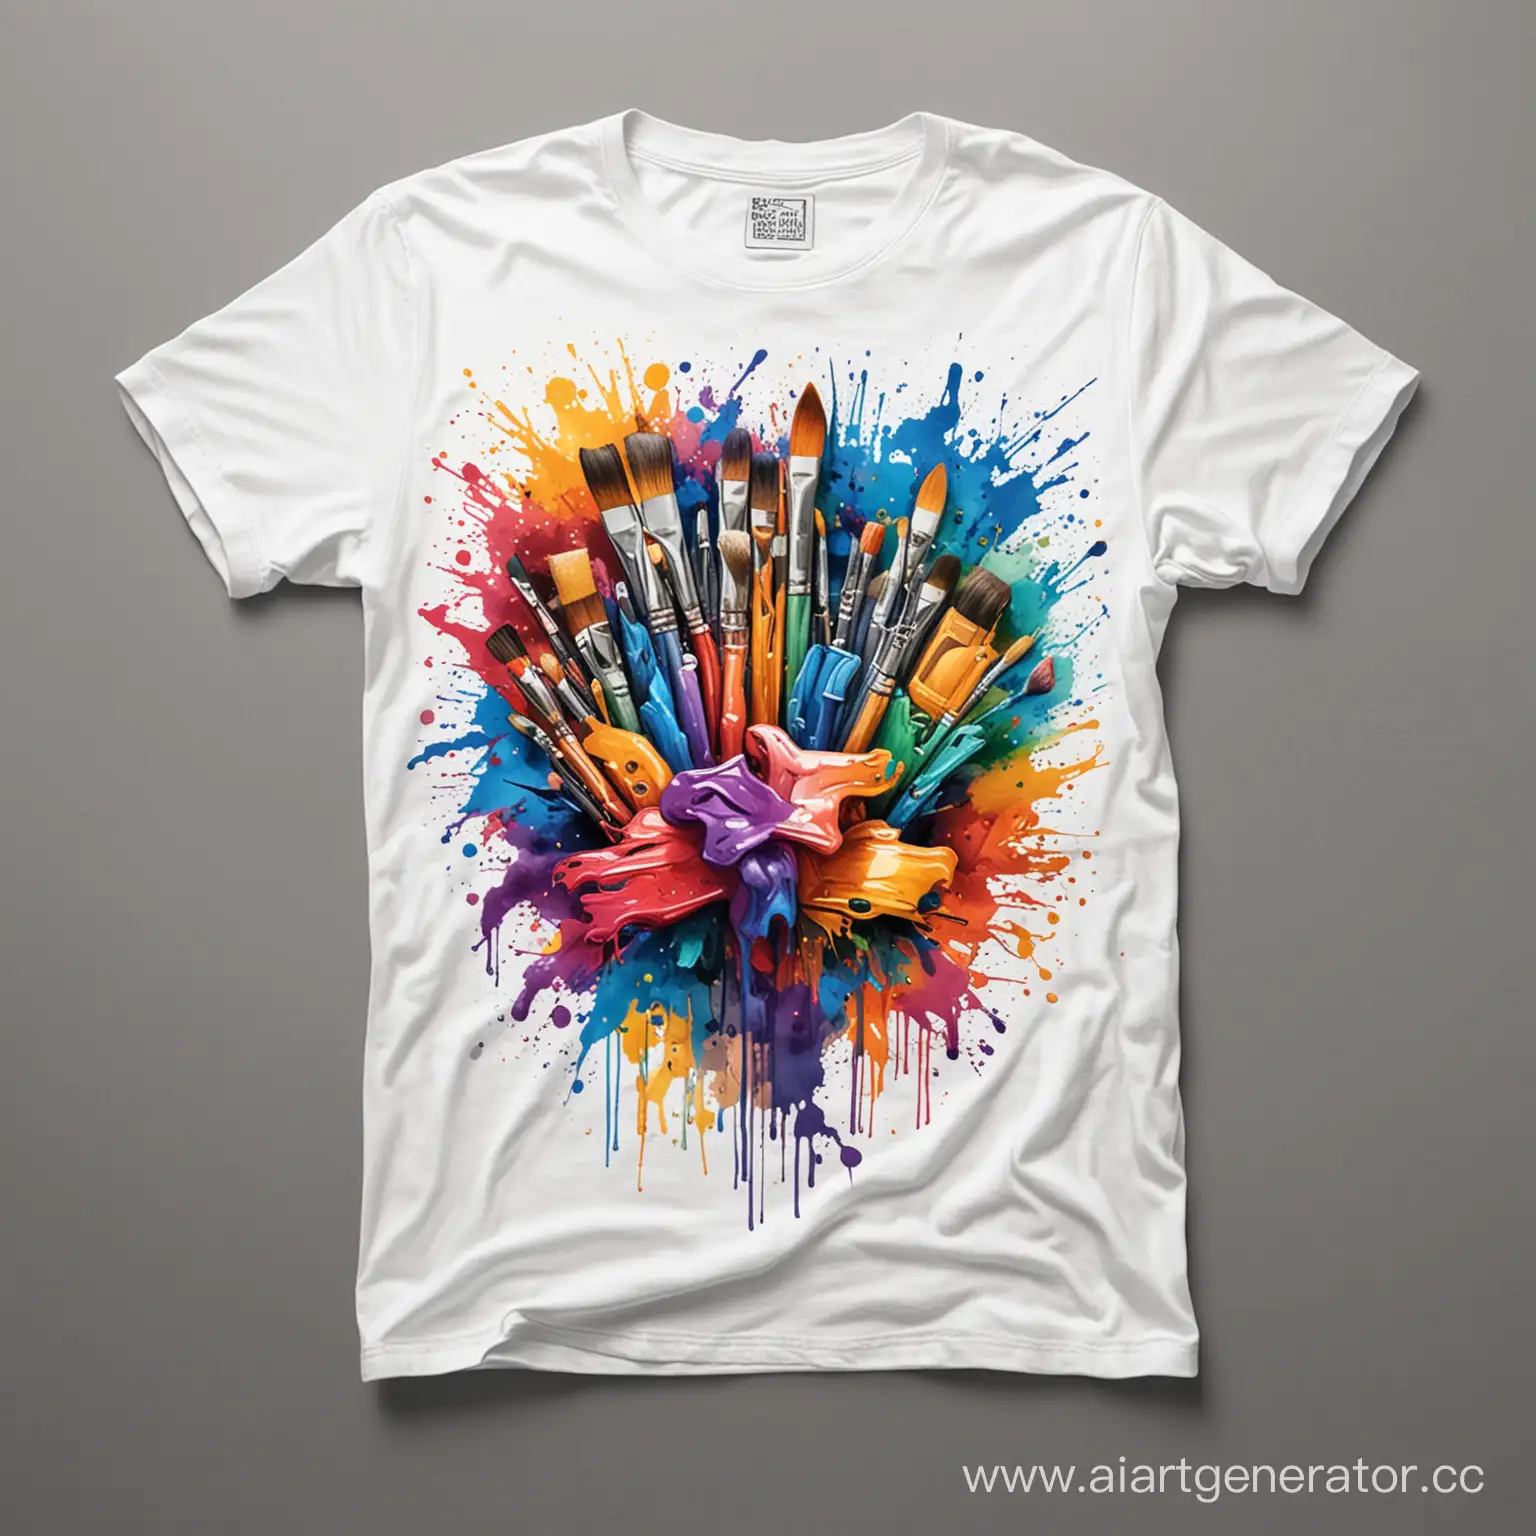 дизайн футболки связанный с творчеством, есть кисти и краски
